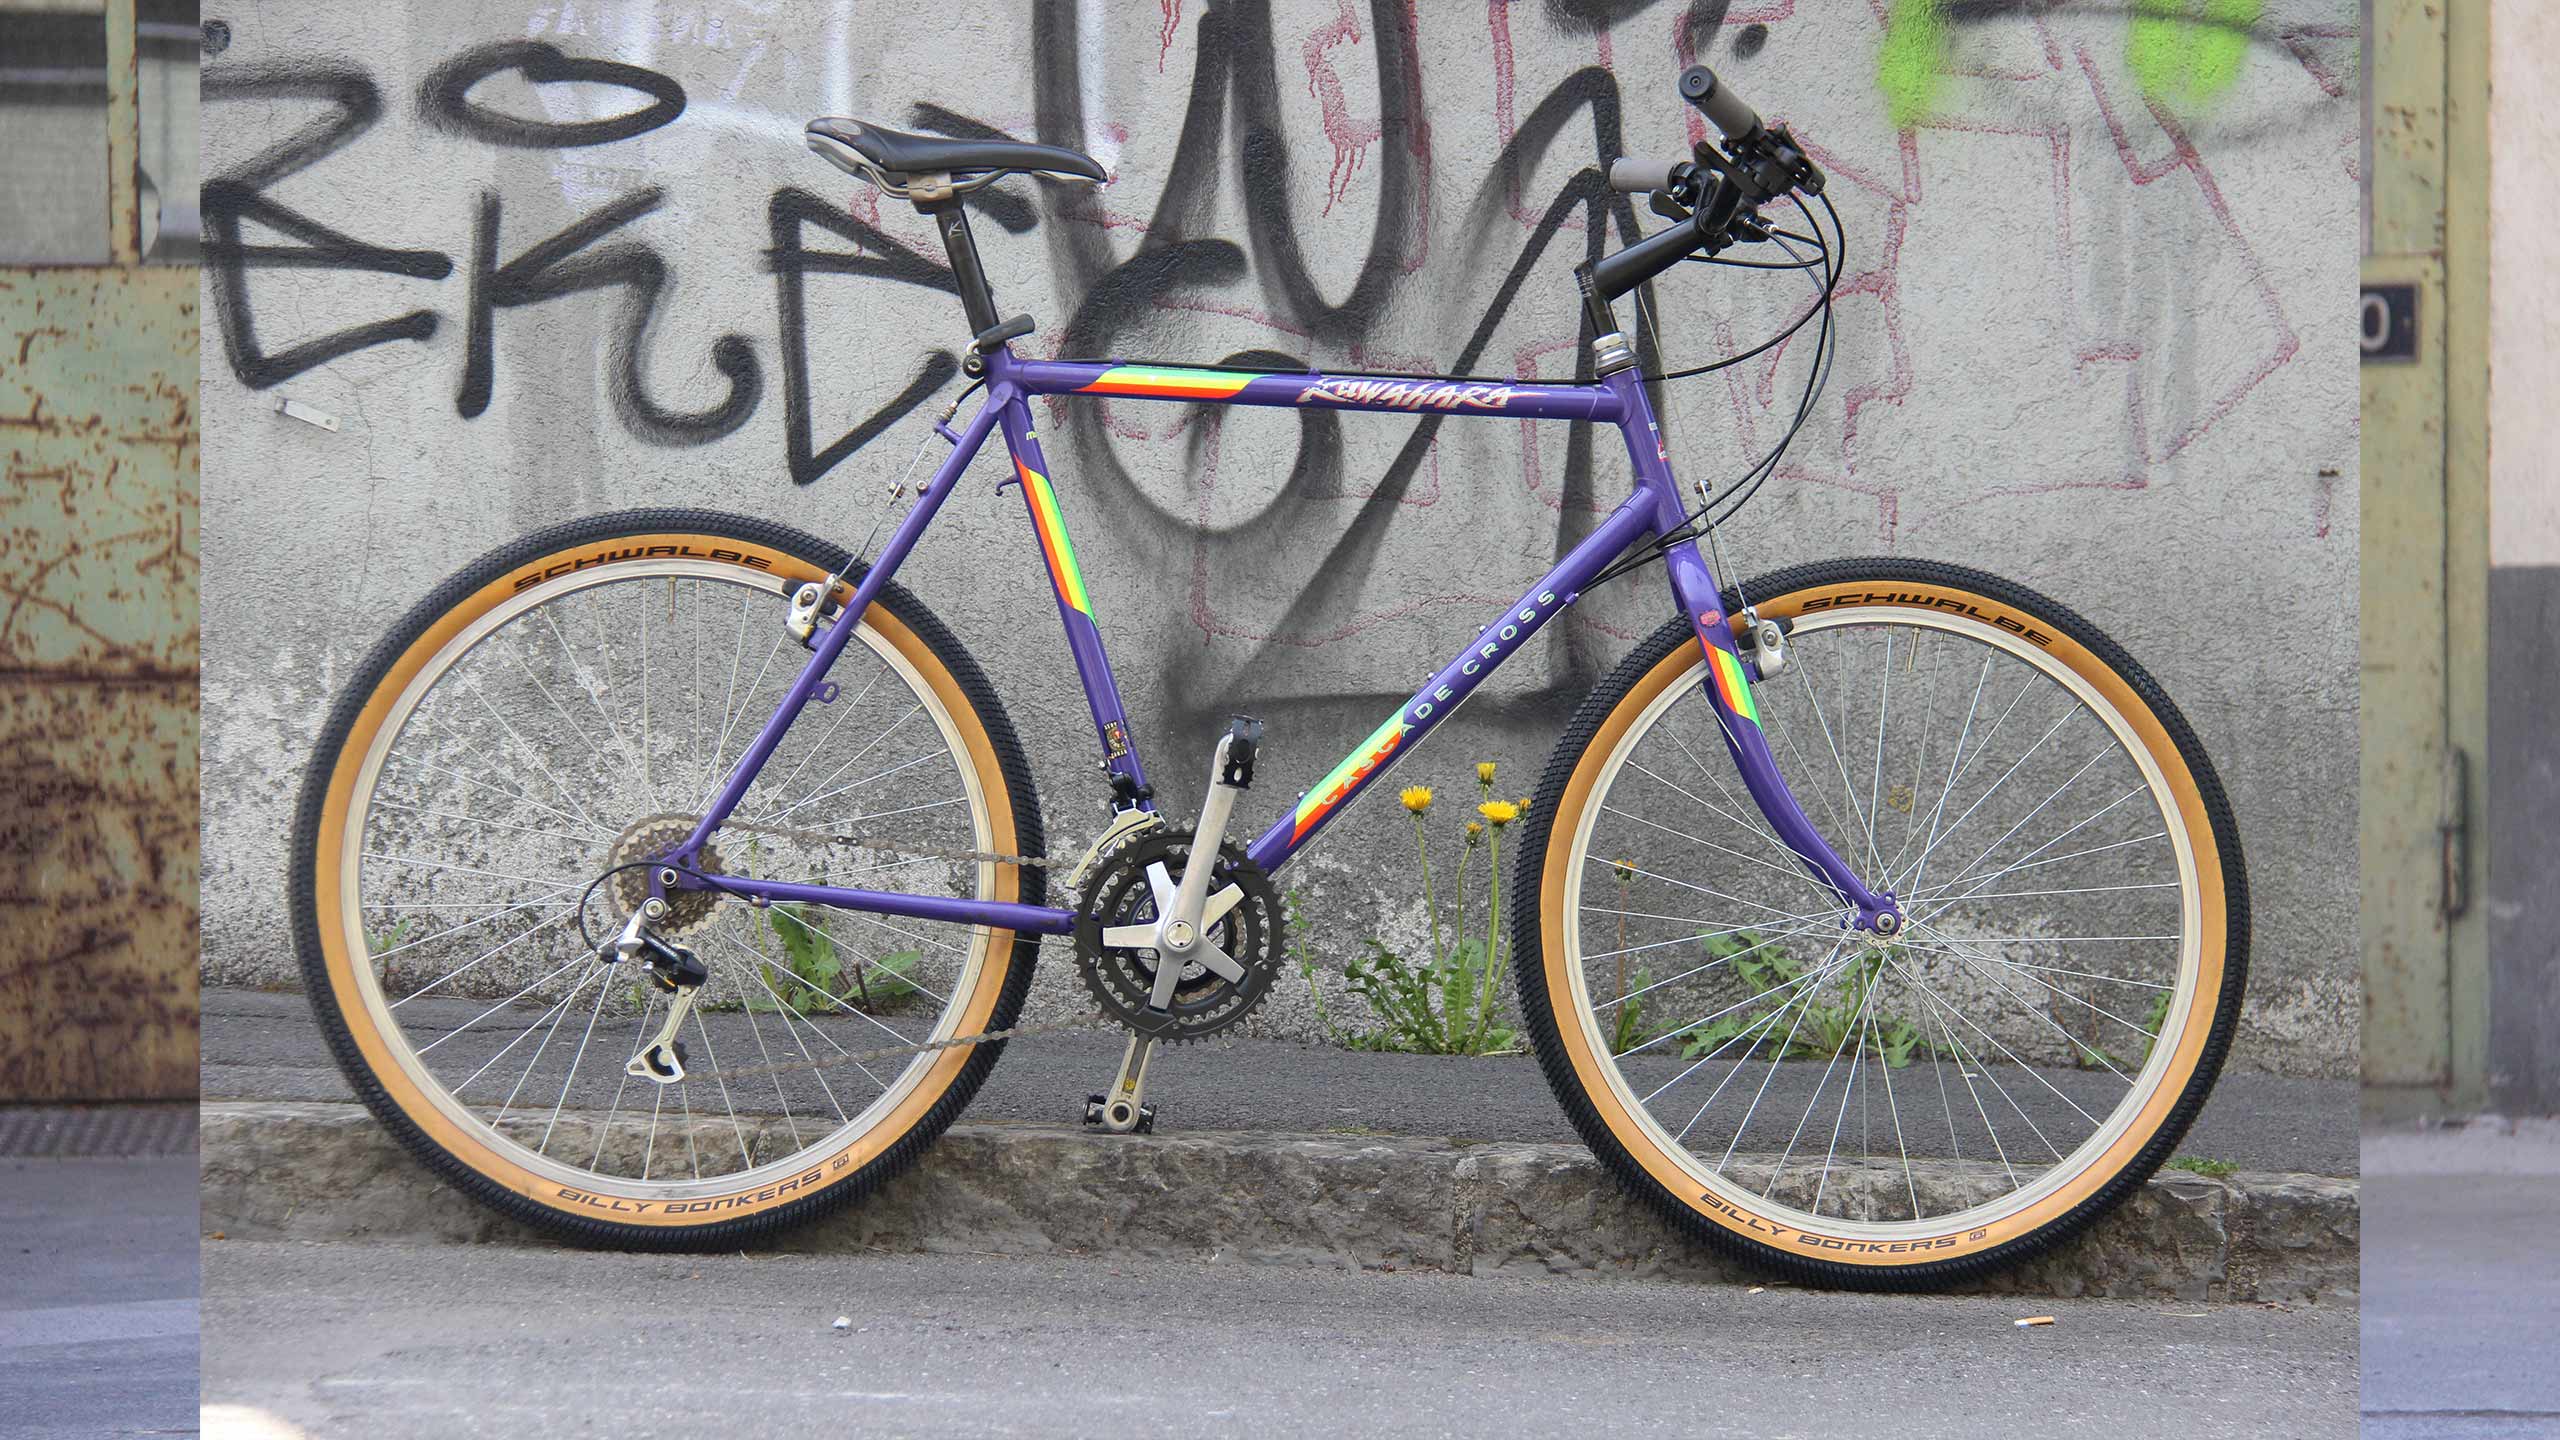 yello-velo-vintage-fahrrad-verleih-interlaken-bike.jpg